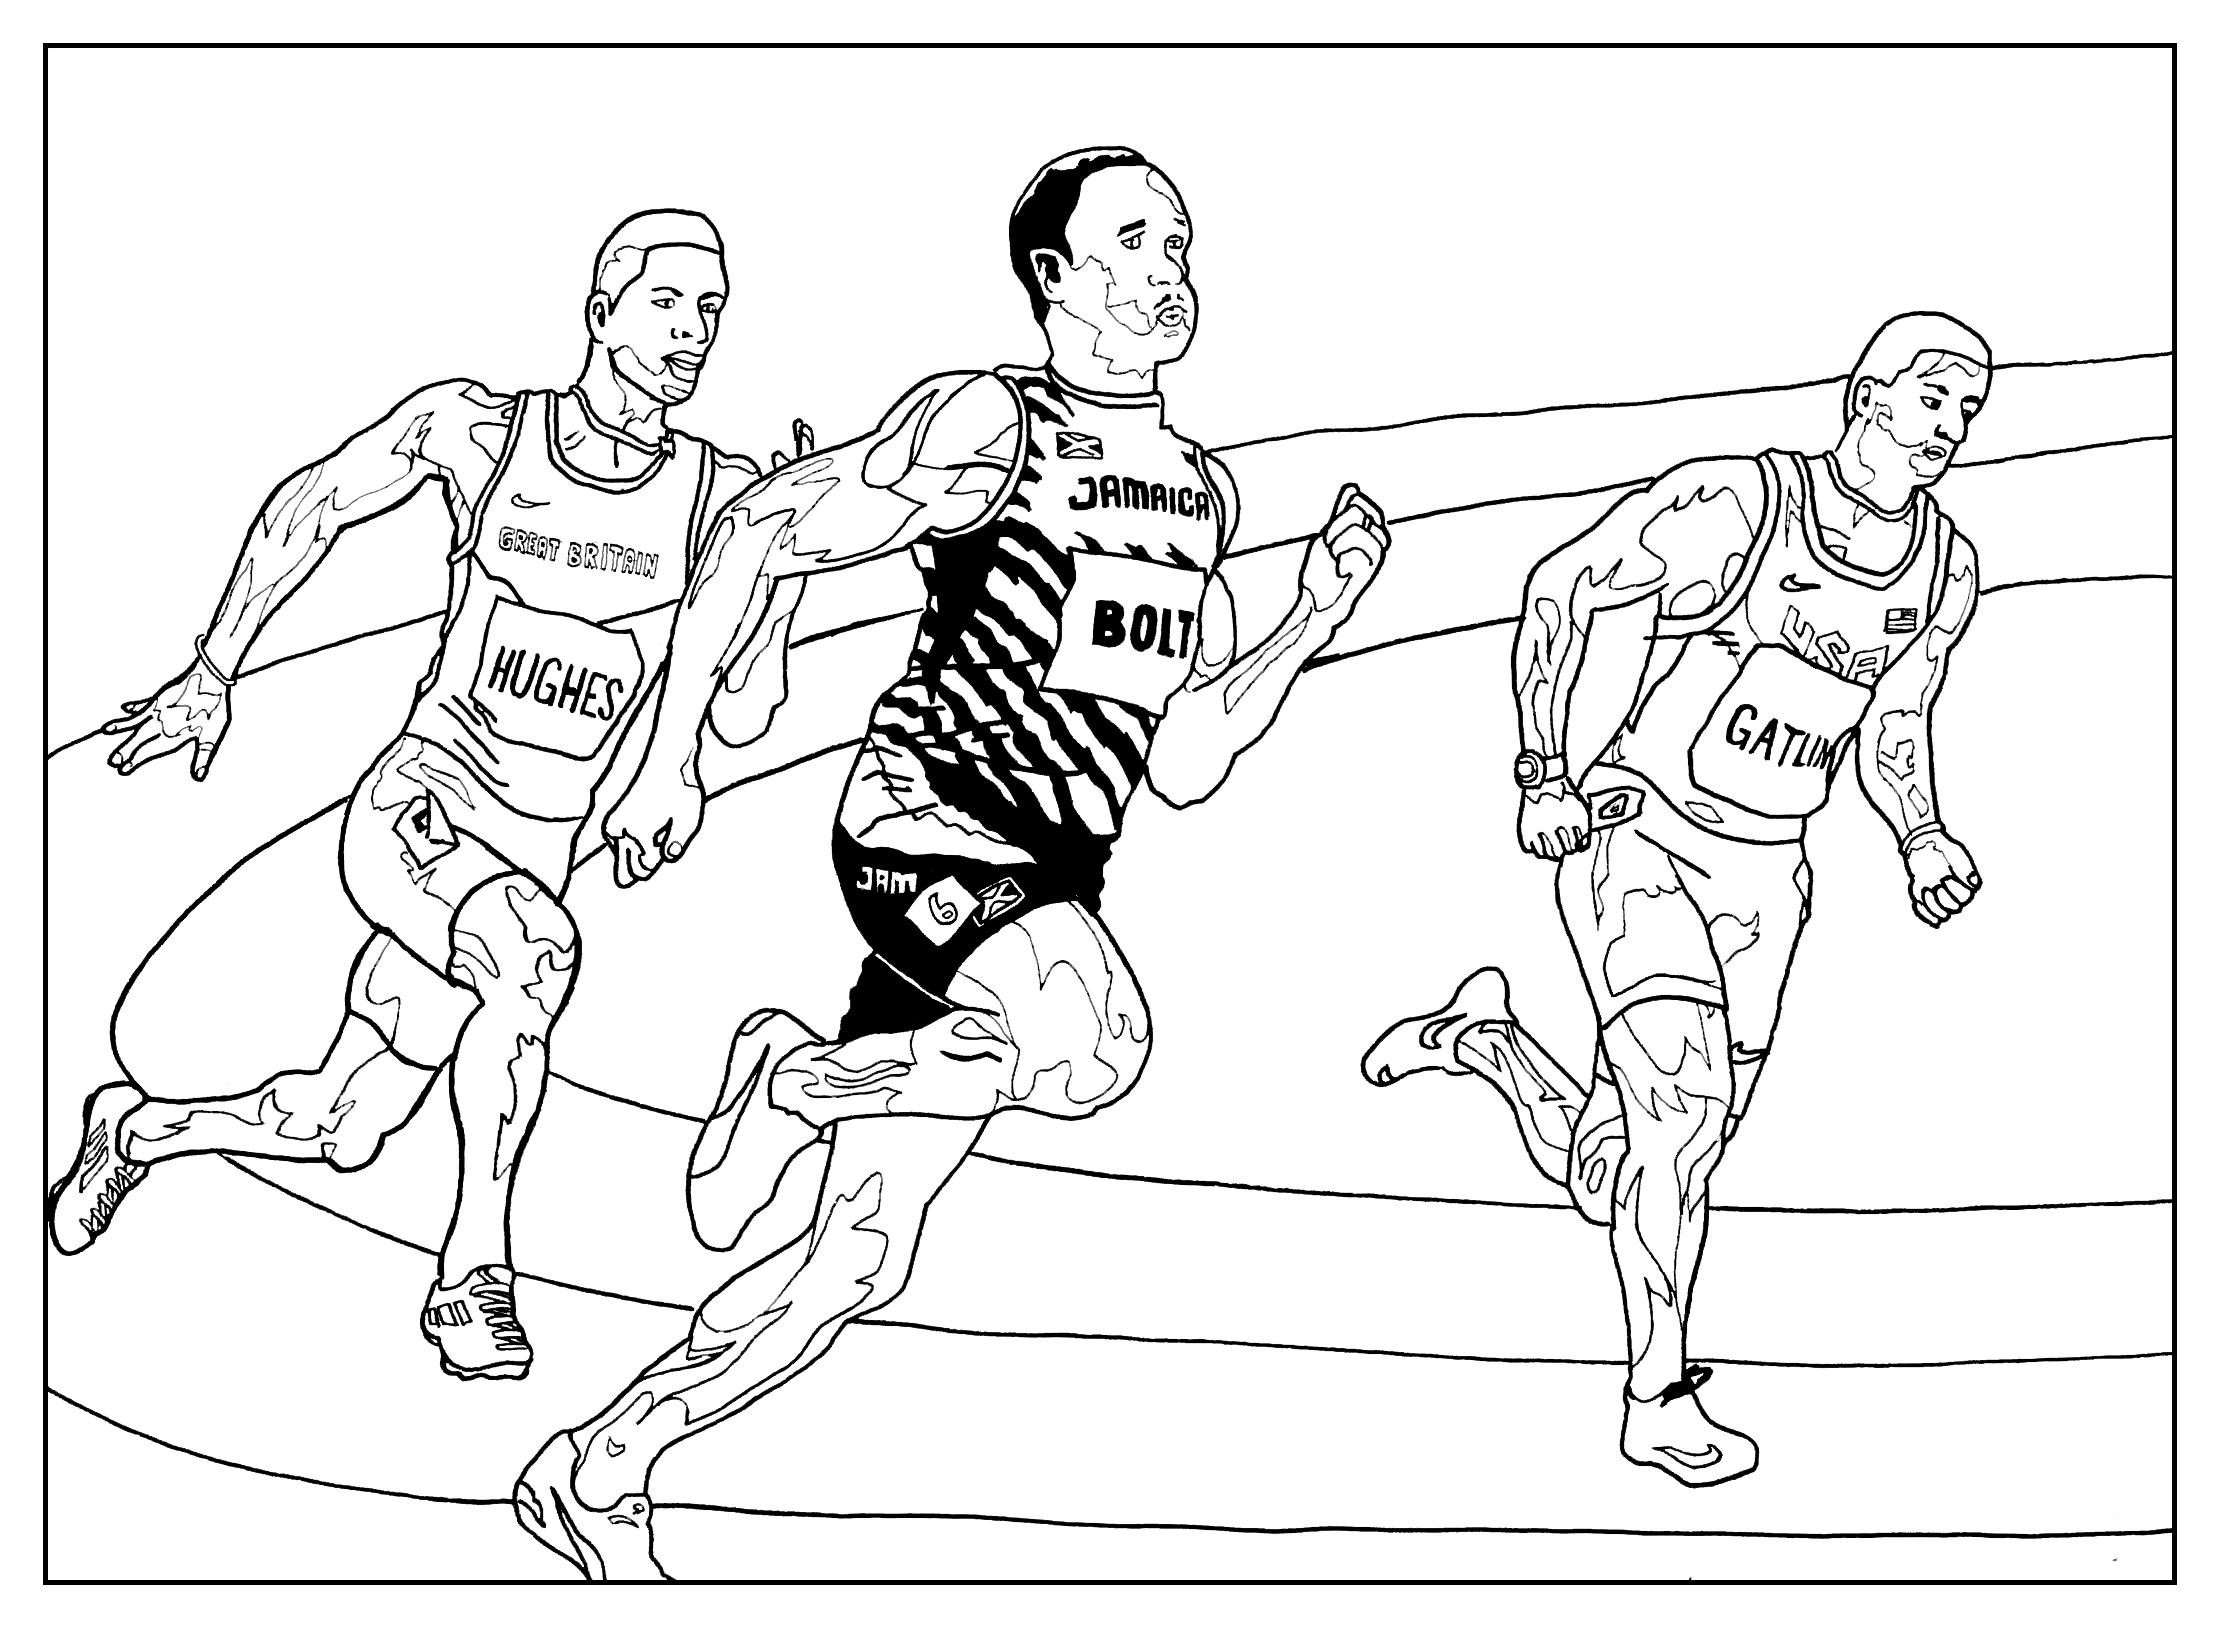 Coloração sobre o tema do atletismo (corrida)